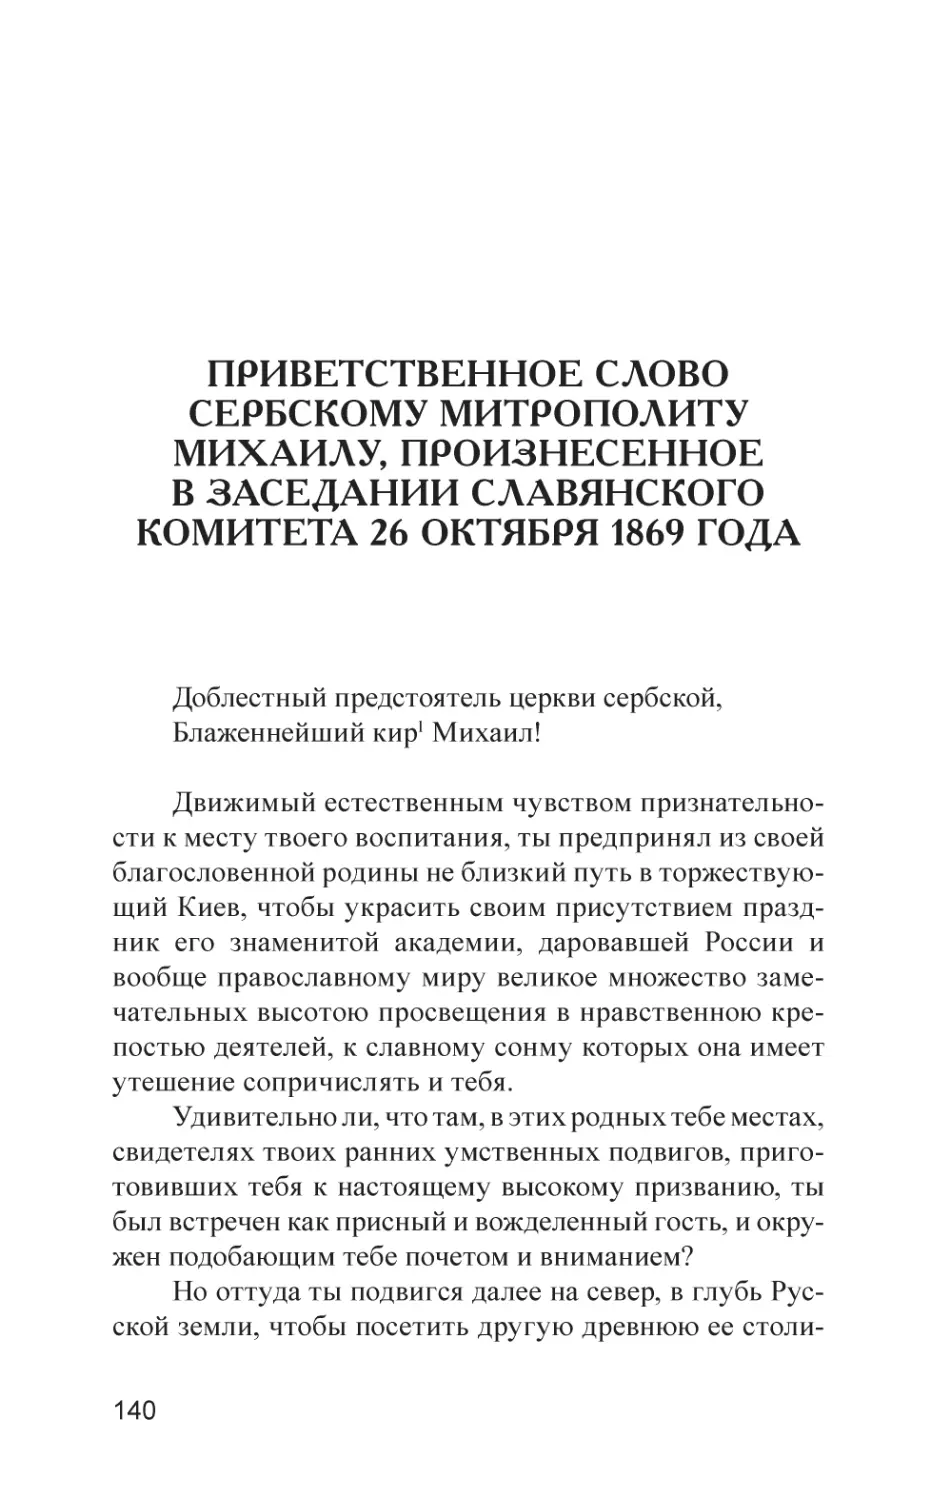 Приветственное слово Сербскому митрополиту Михаилу, произнесенное в заседании Славянского комитета 26 октября 1869 года